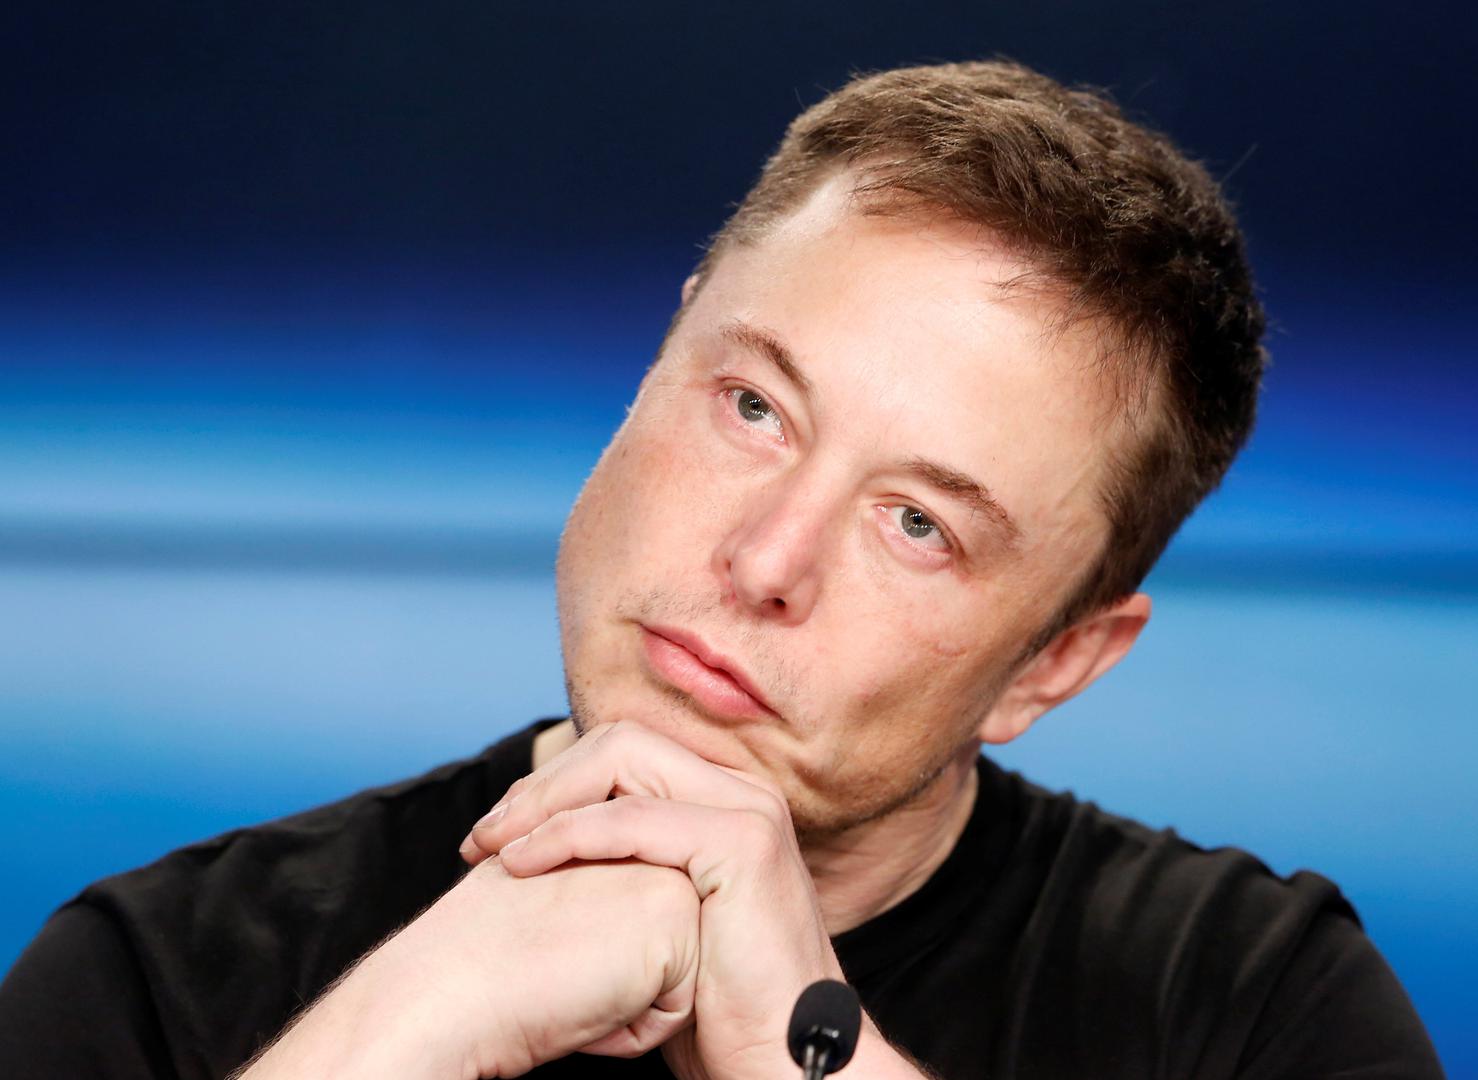 Milijarder Elon Musk u brigama - 3,5 milijarde dolara izgubila je kompanija Tesla u zadnje tri godine